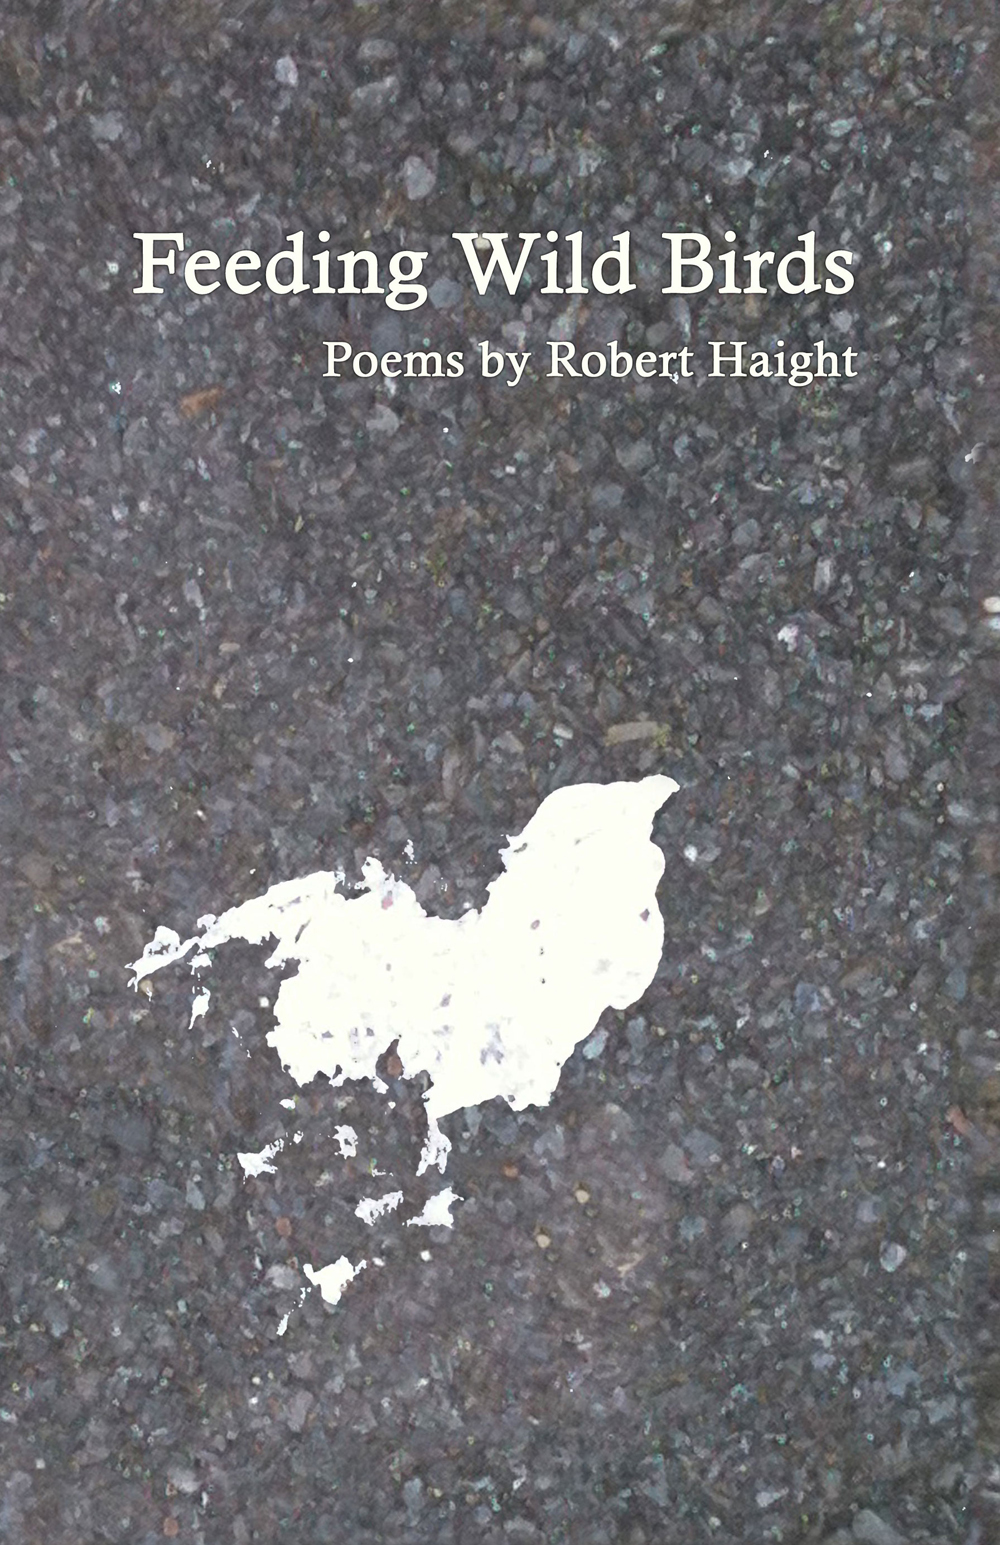 Feeding Wild Birds - Robert Haight - UPC 978-1-936419-27-2